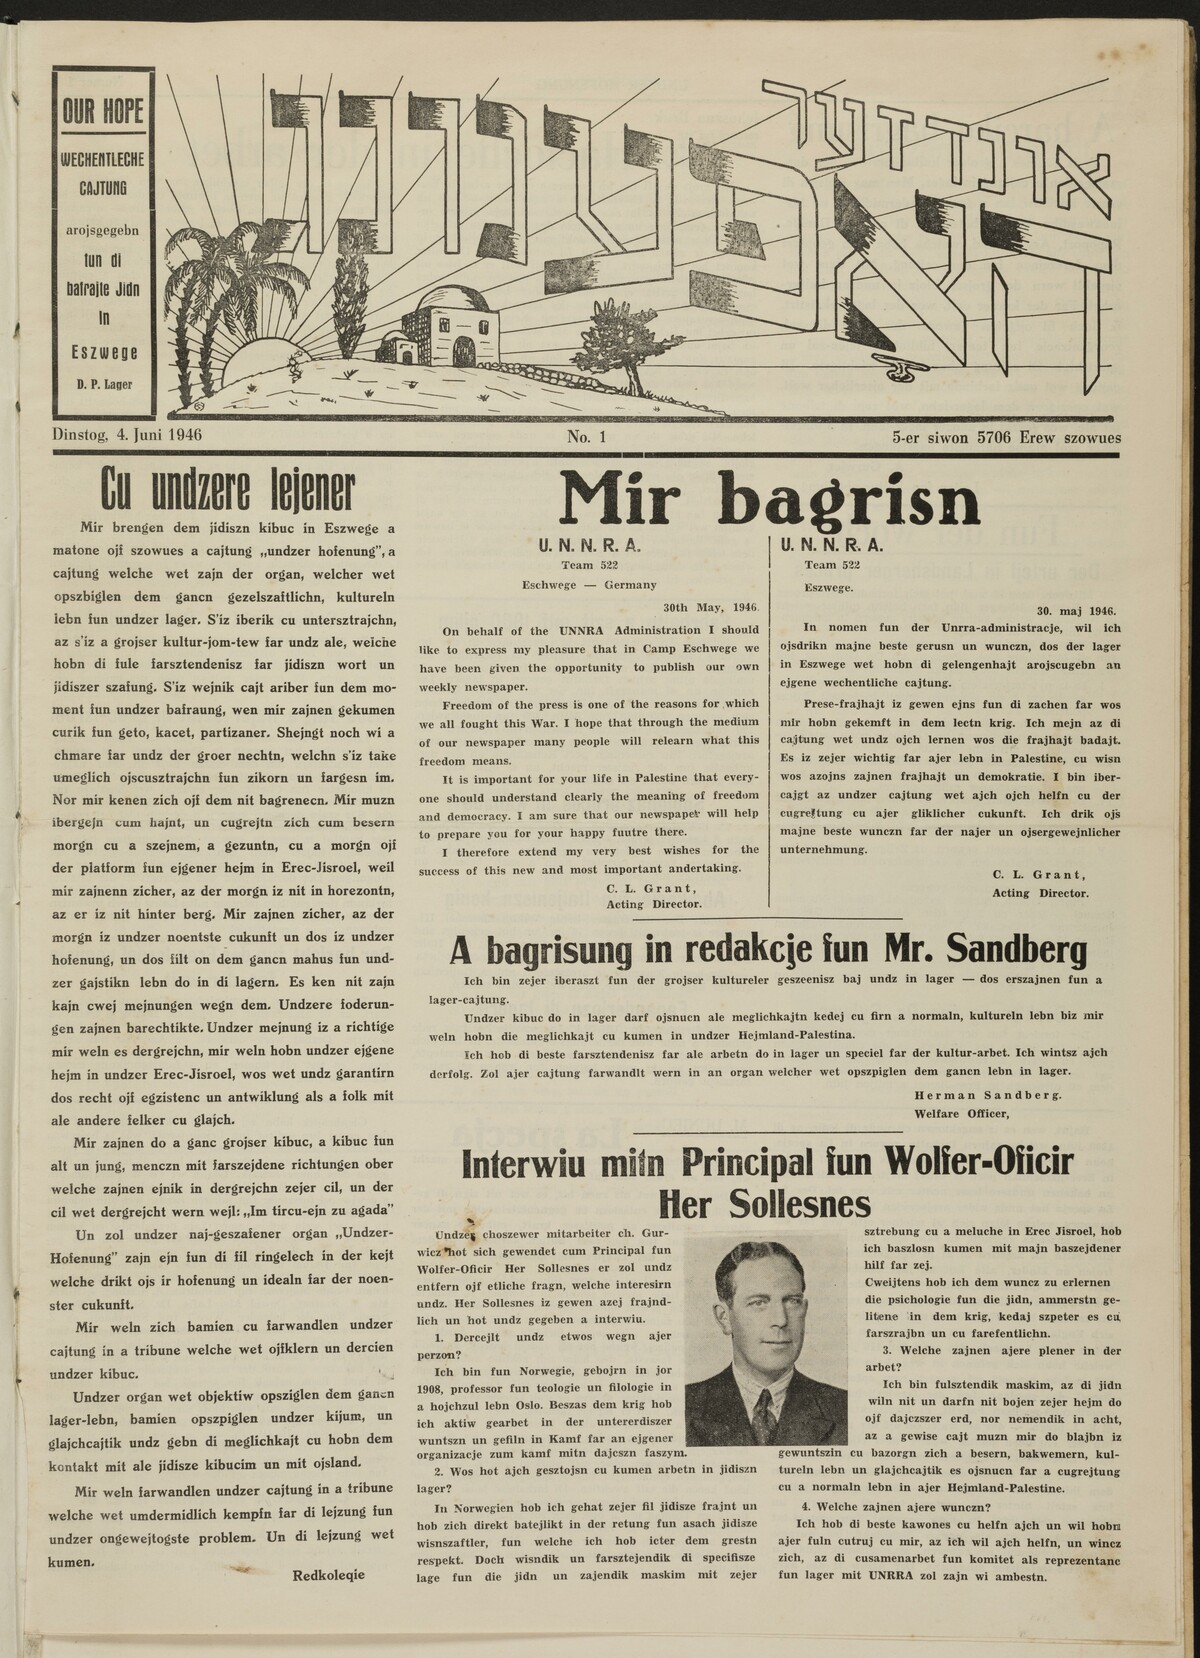 Newspaper of Displaced Persons, Undzer Hofenung, Eschwege